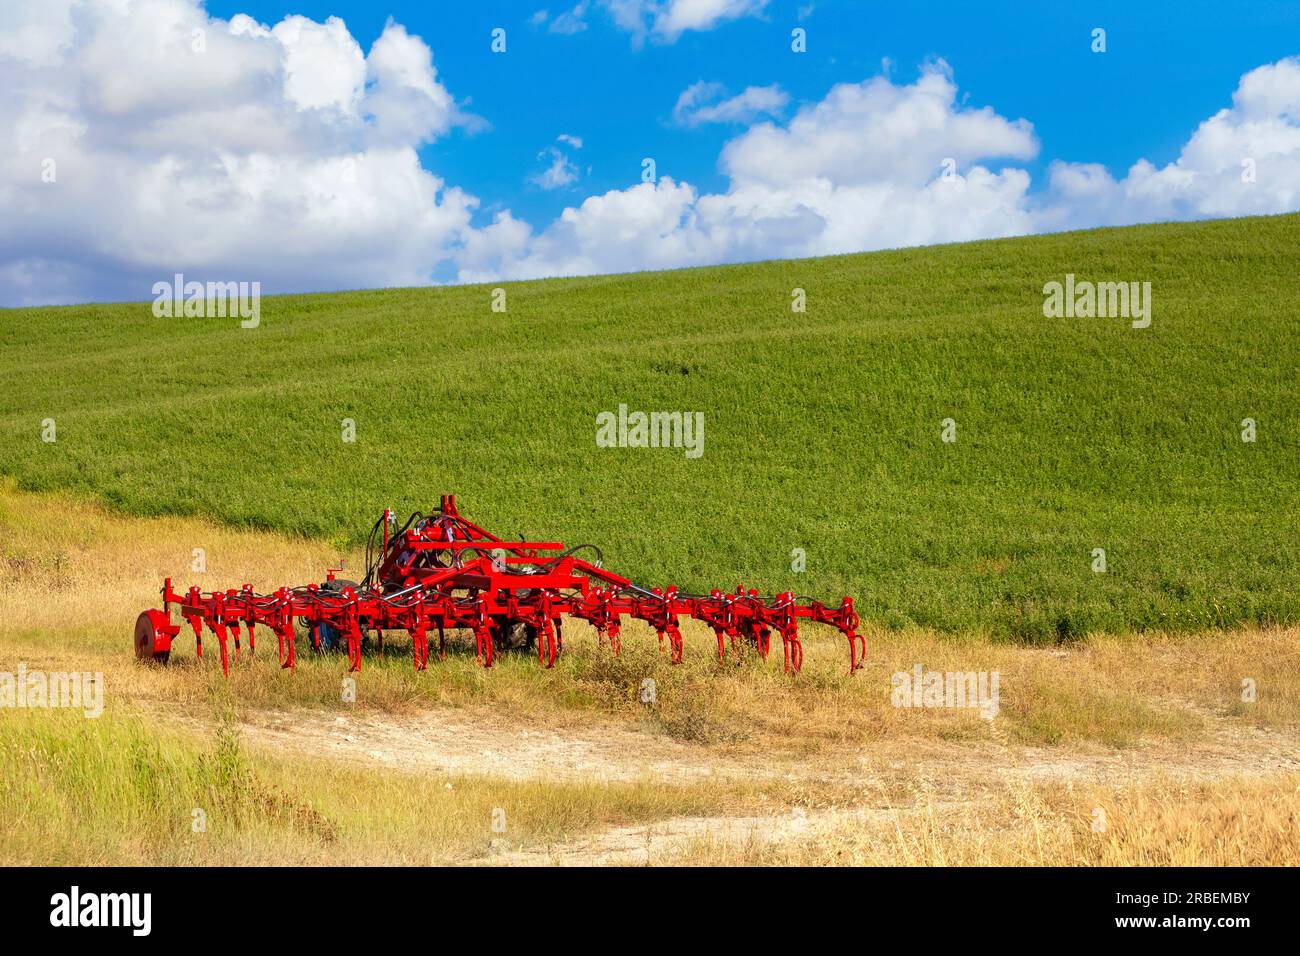 Splendide attrezzature agricole rosse parcheggiate in un pittoresco paesaggio di erba secca e prato lussureggiante Foto Stock